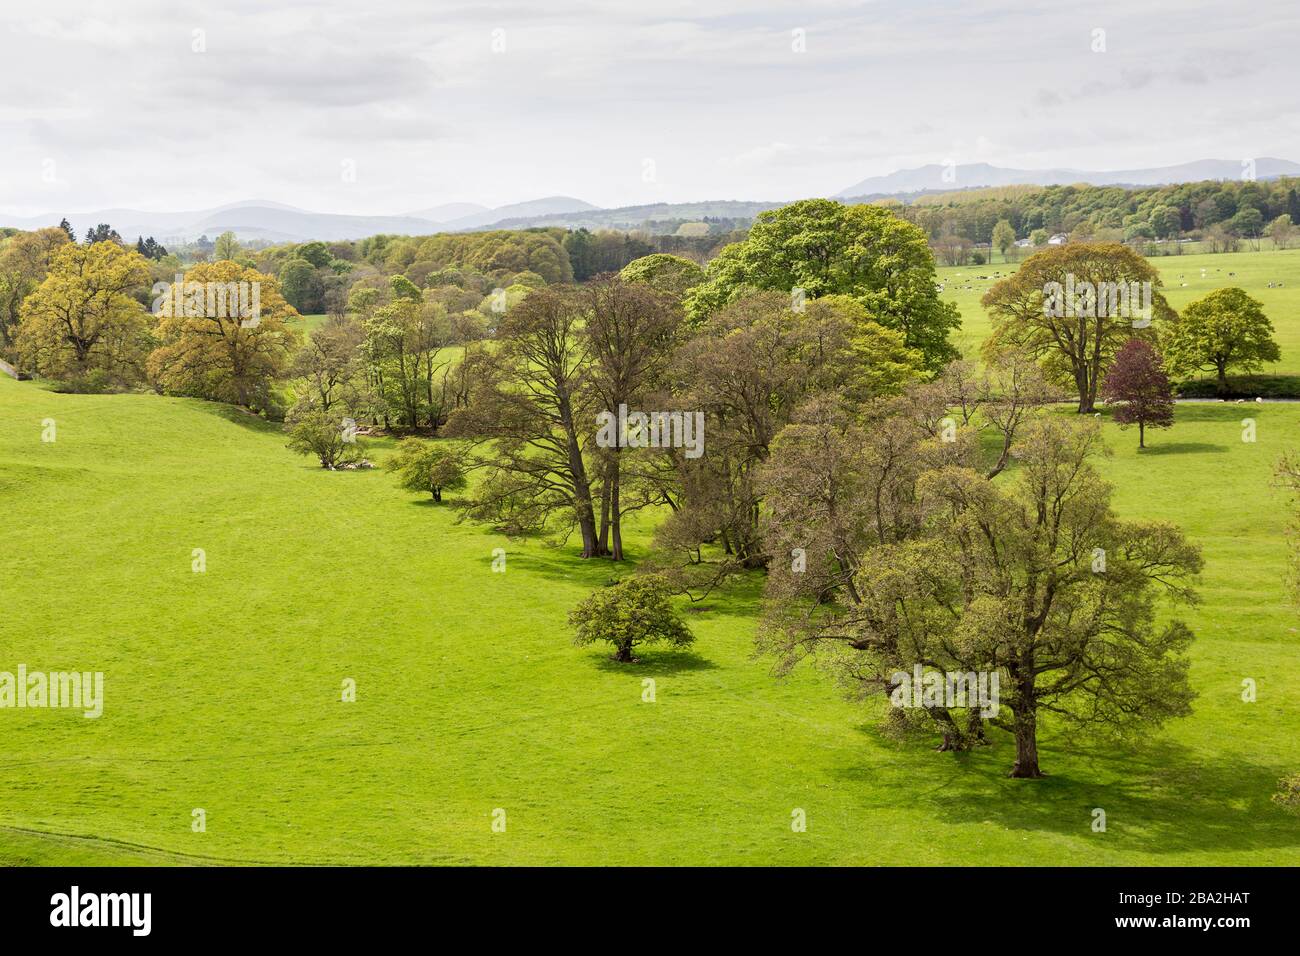 Arbres et champs en campagne libre, Brougham, Cumbria, Angleterre, Royaume-Uni Banque D'Images